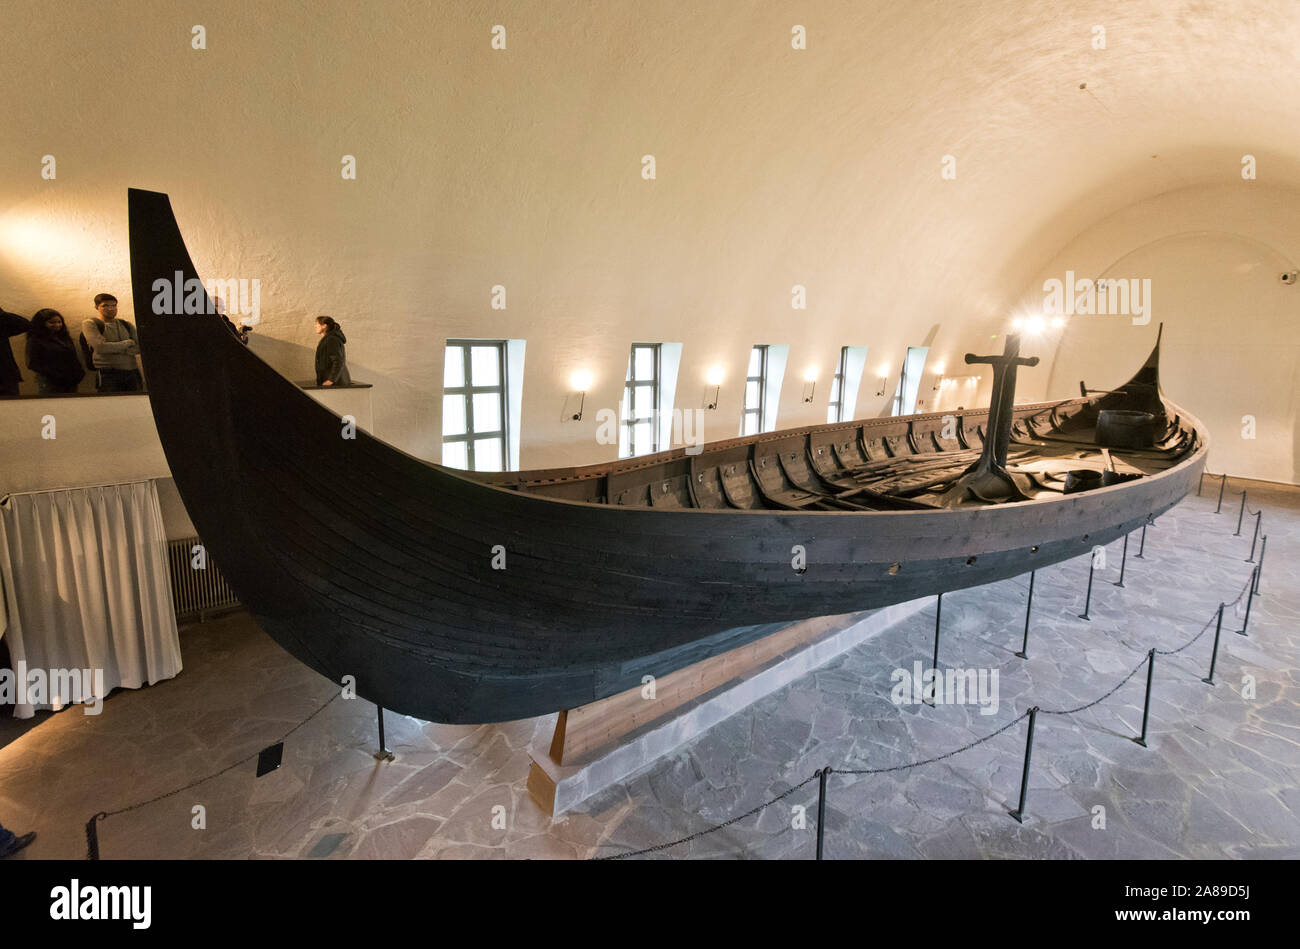 Le navire de Gokstad, datant du 10e siècle, à la Viking Ship Museum à Oslo, Norvège Banque D'Images